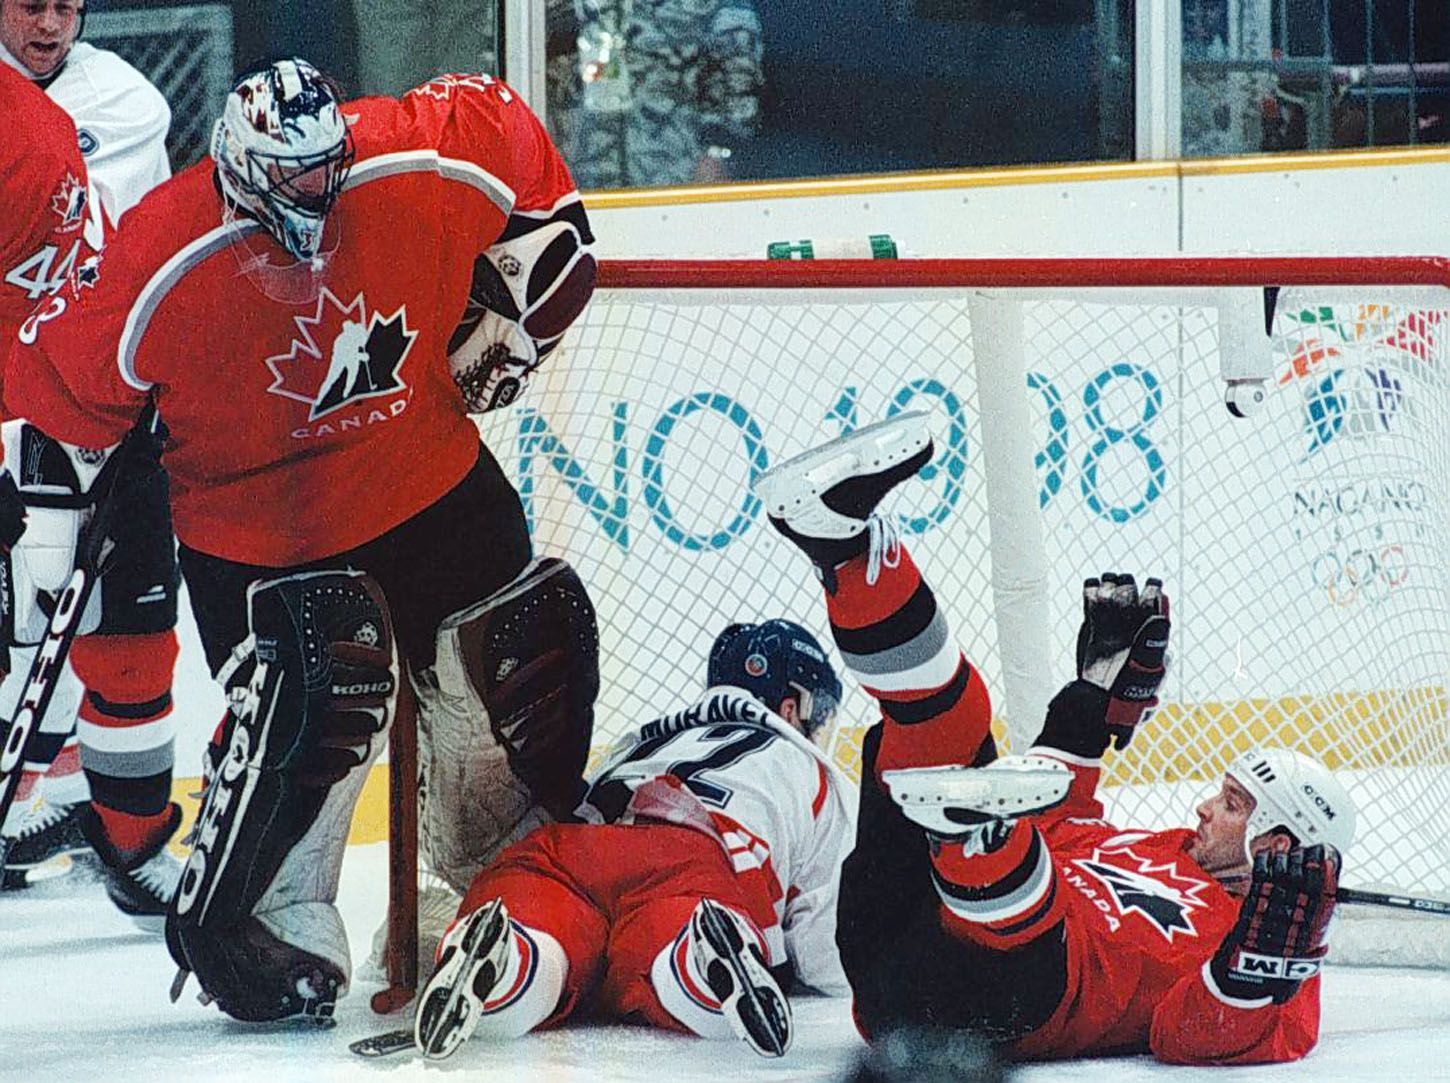 Archivní snímky z ZOH Nagano 1998 - hokej. Moravec a Shanahan